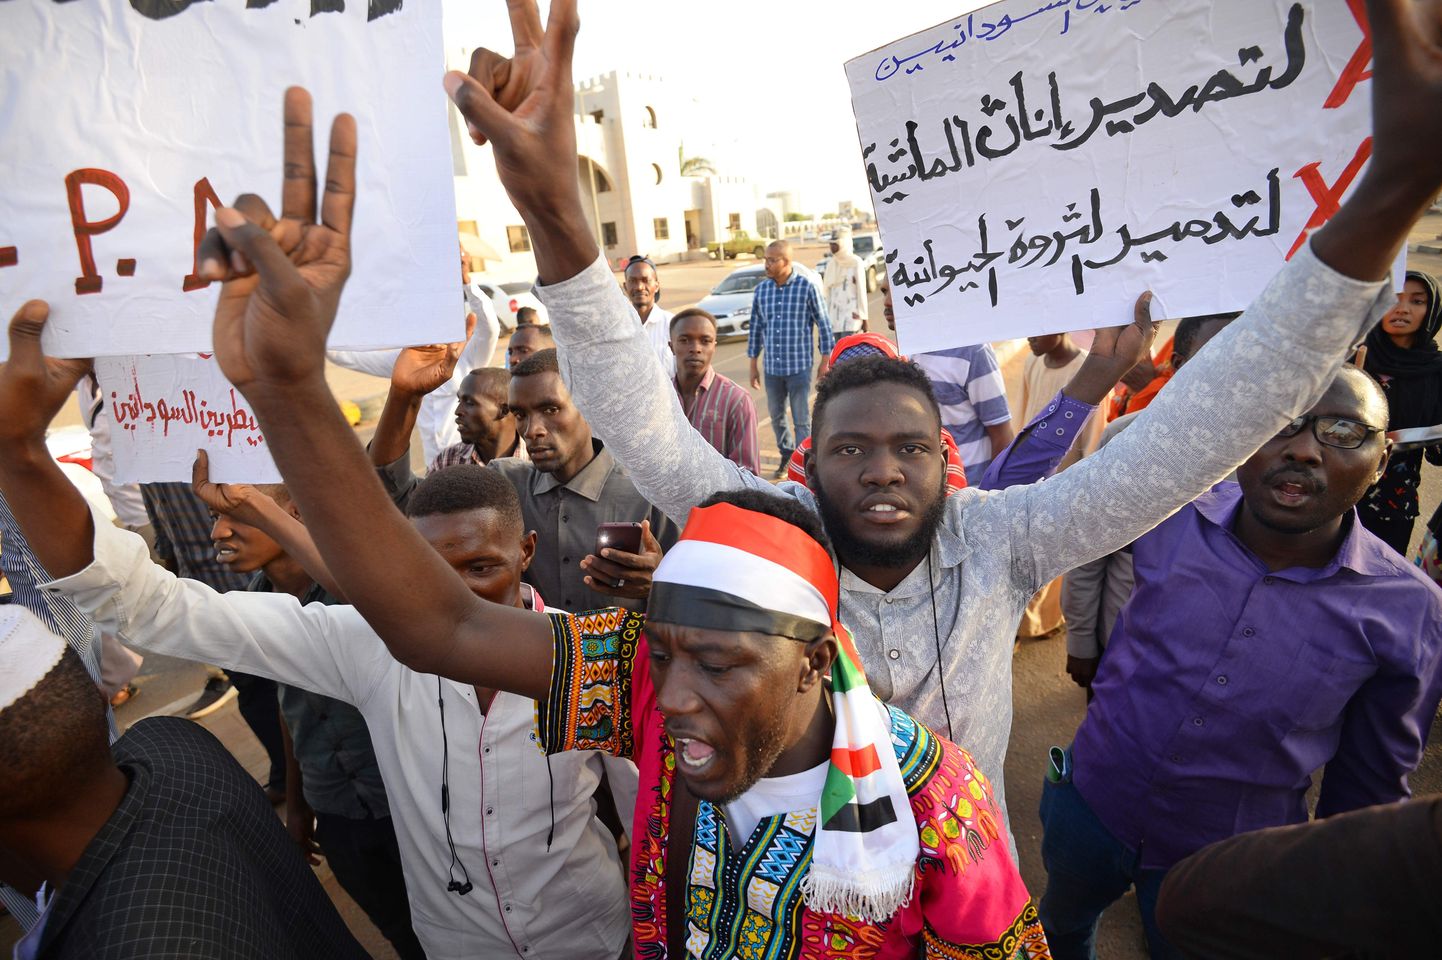 Sudānas pagaidu militārā padome un protestu līderi trešdienas naktī vienojās par trīs gadu pārejas periodu, kurā vara tiks nodota pilnīgi civilai pārvaldei.